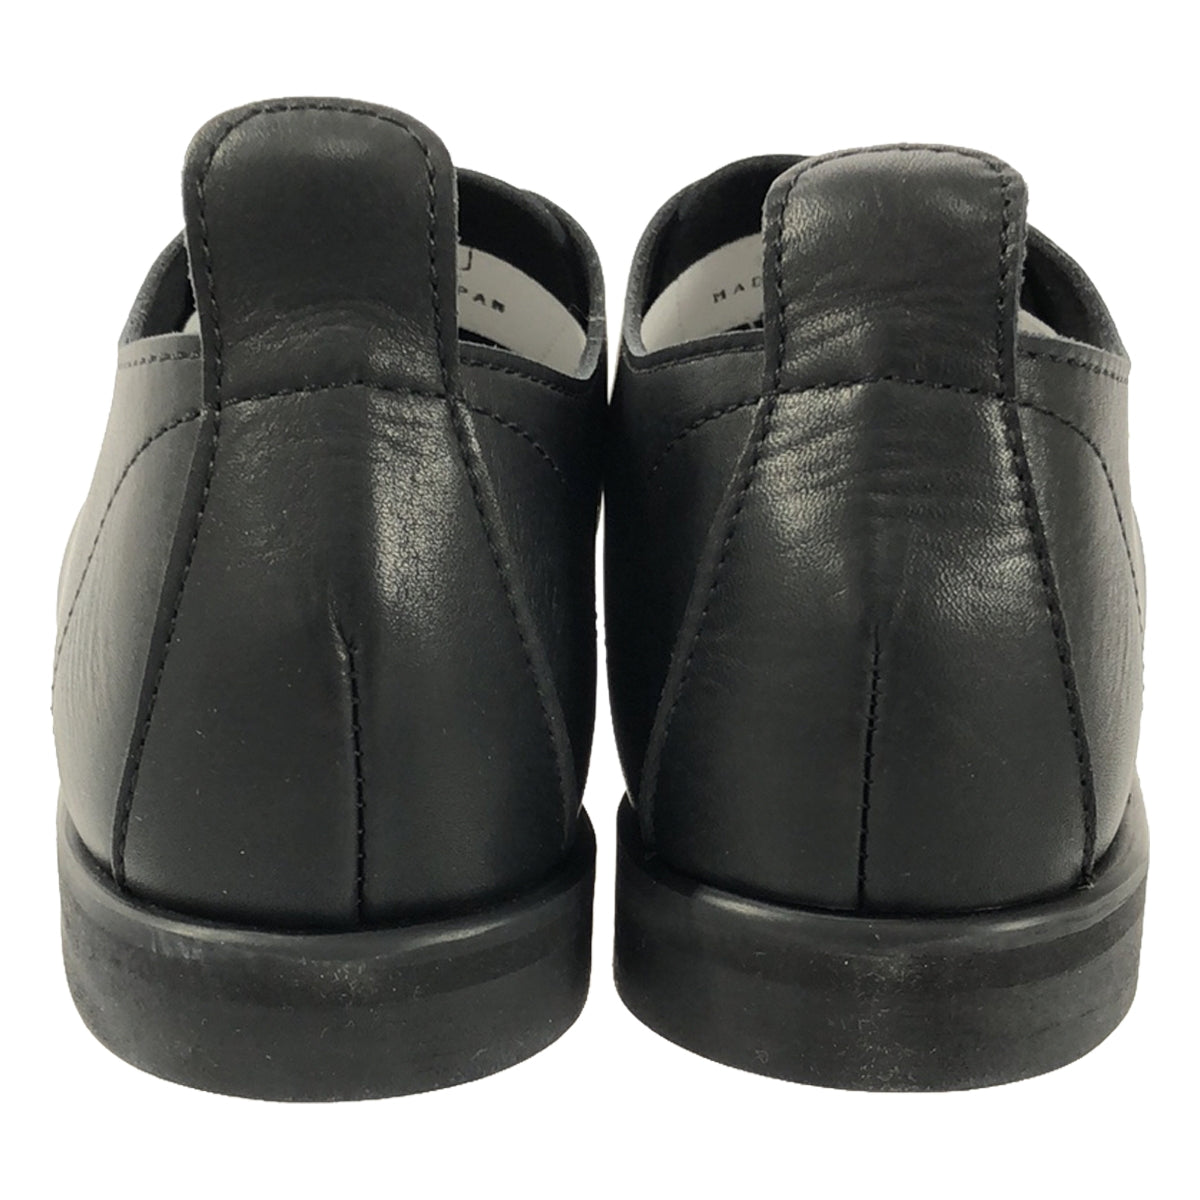 roundabout / ラウンダバウト | Leather Slip-on Shoes Waterproof Leather ウォータプルーフ レザー スリッポン シューズ | 6 | メンズ